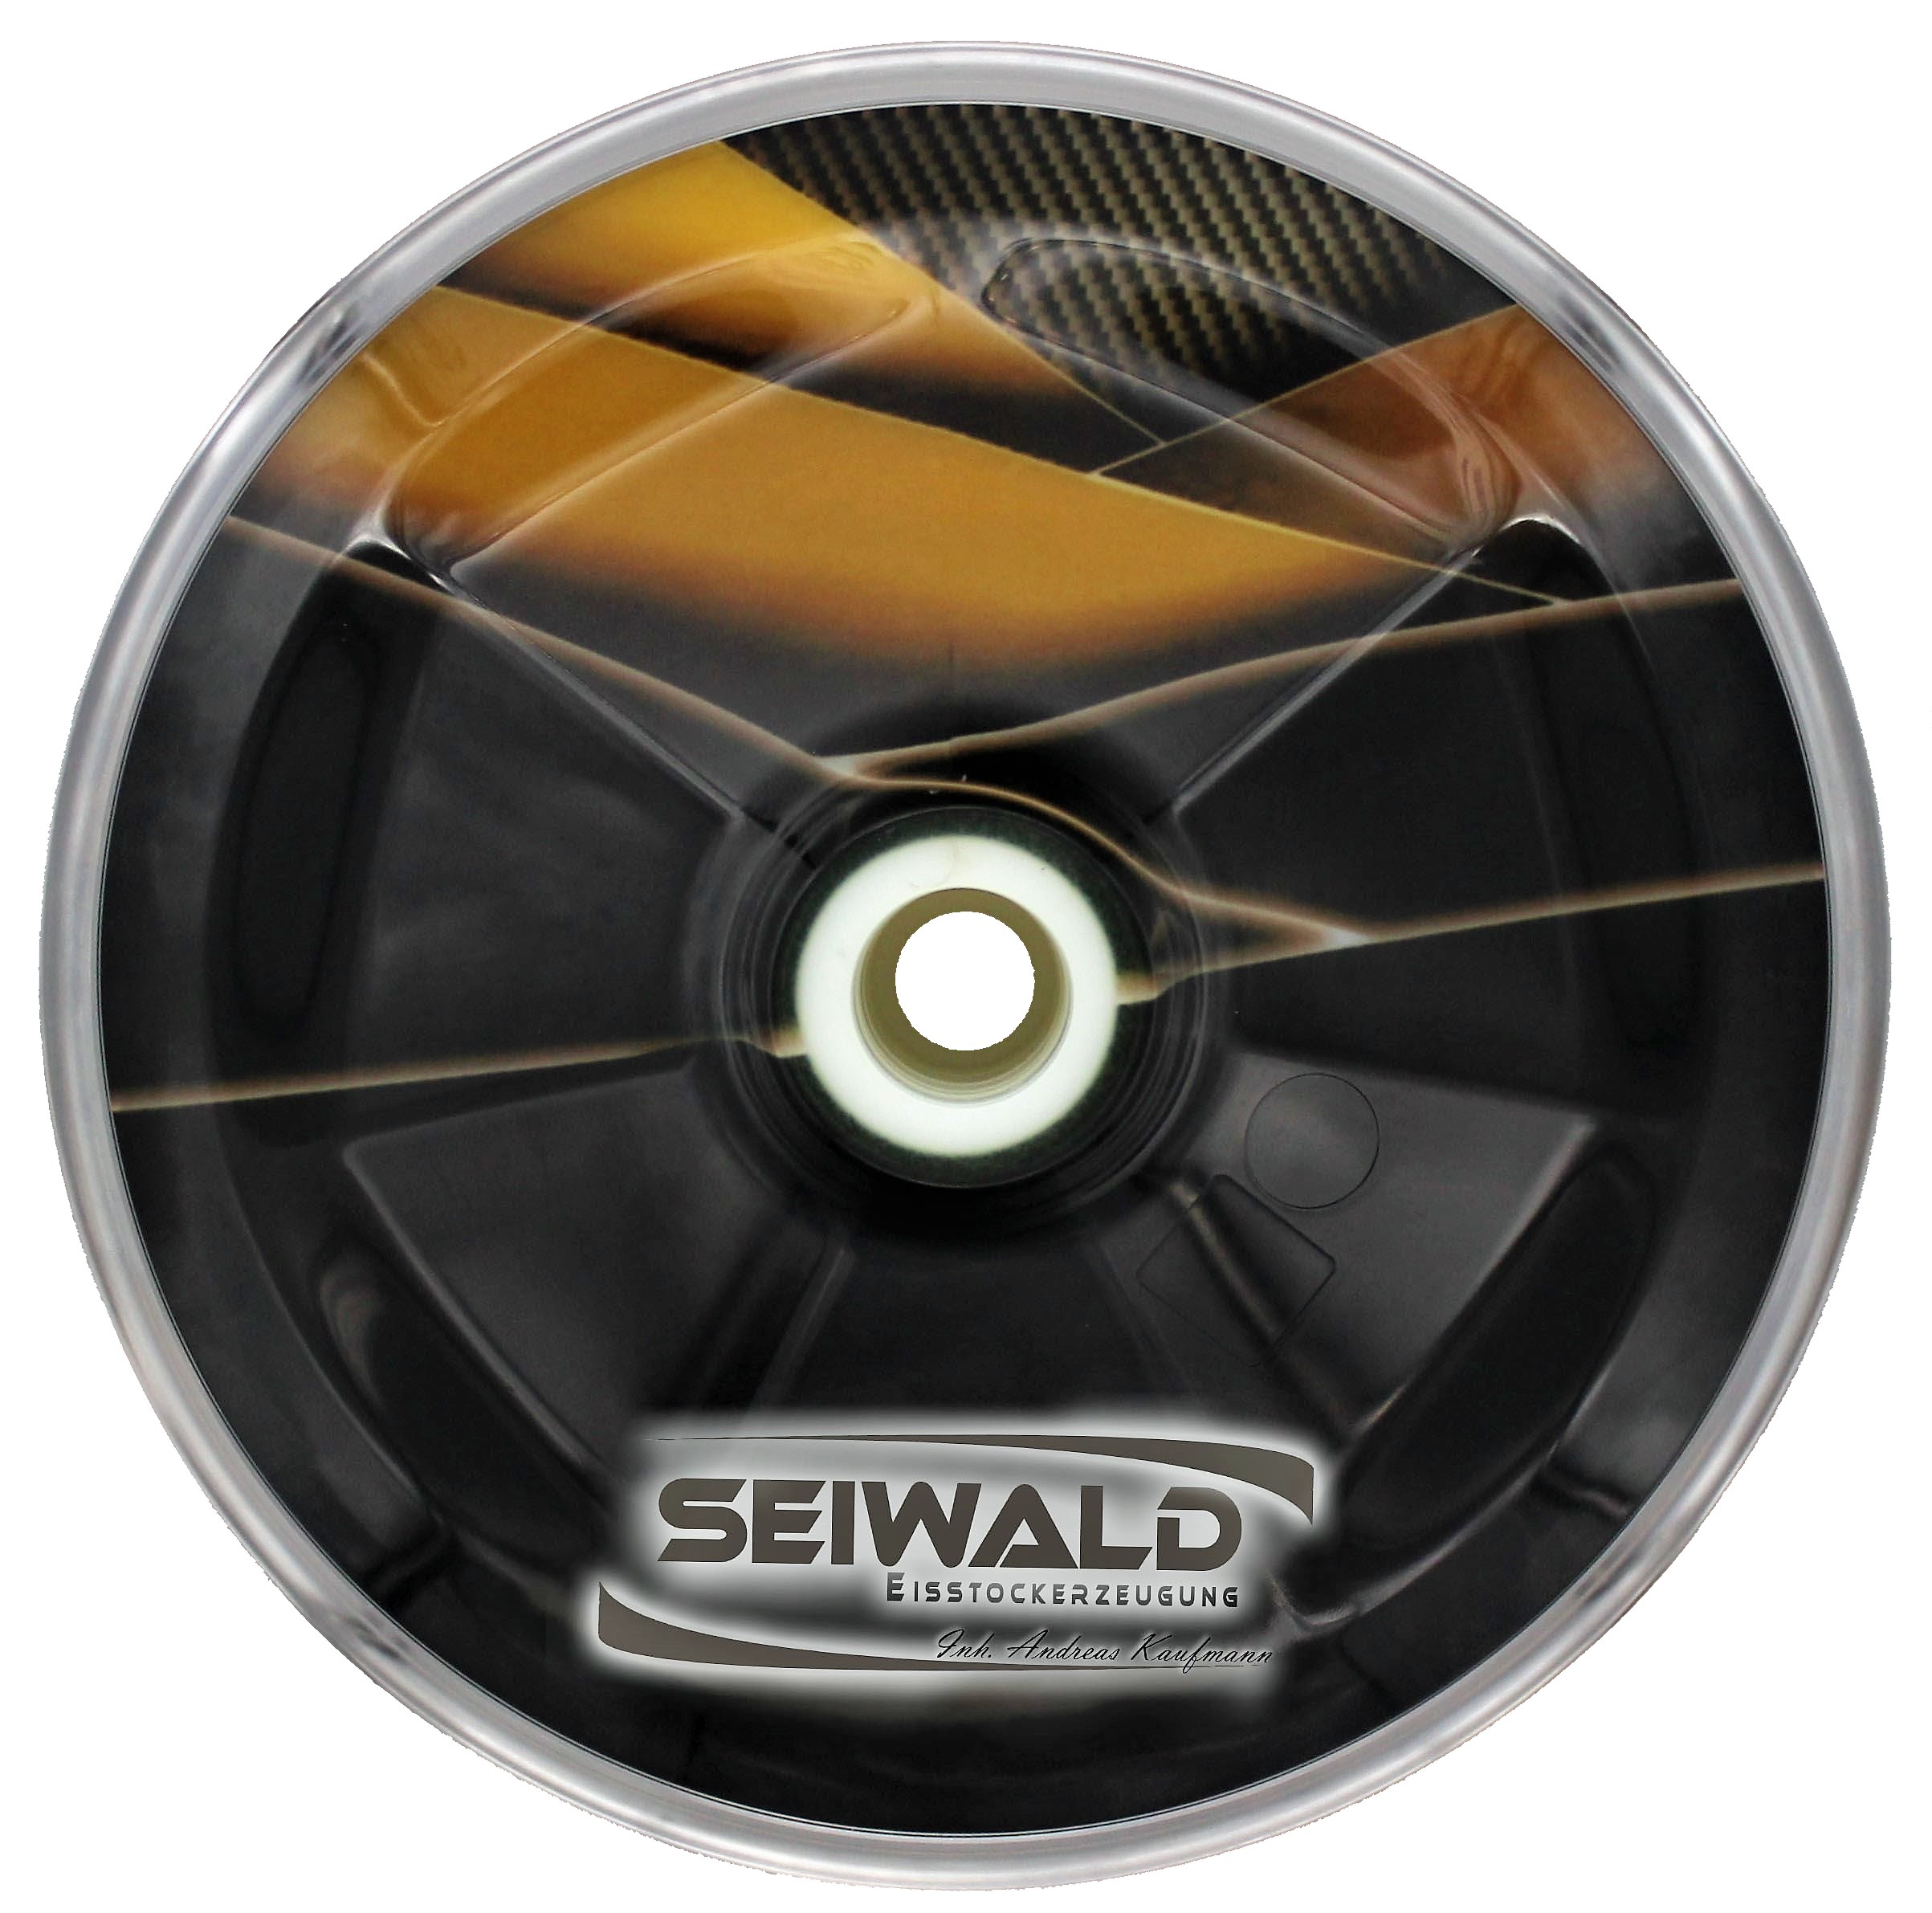 Seiwald Prisma 2020 gold